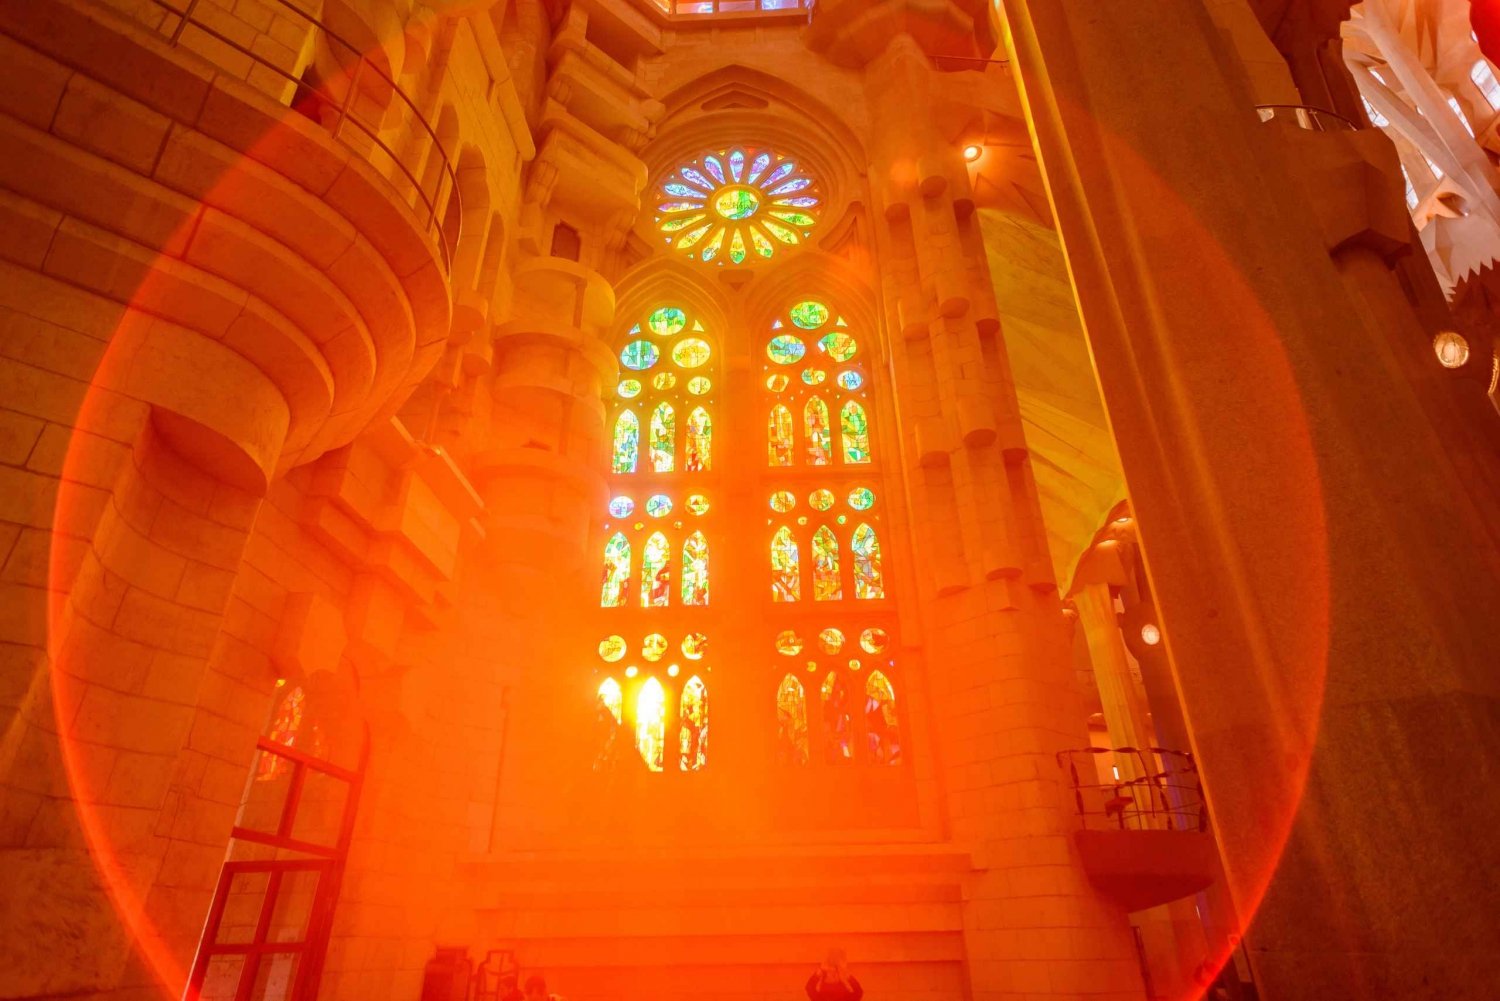 Barcelona: Sagrada Familia Fast-Track Morning Guided Tour